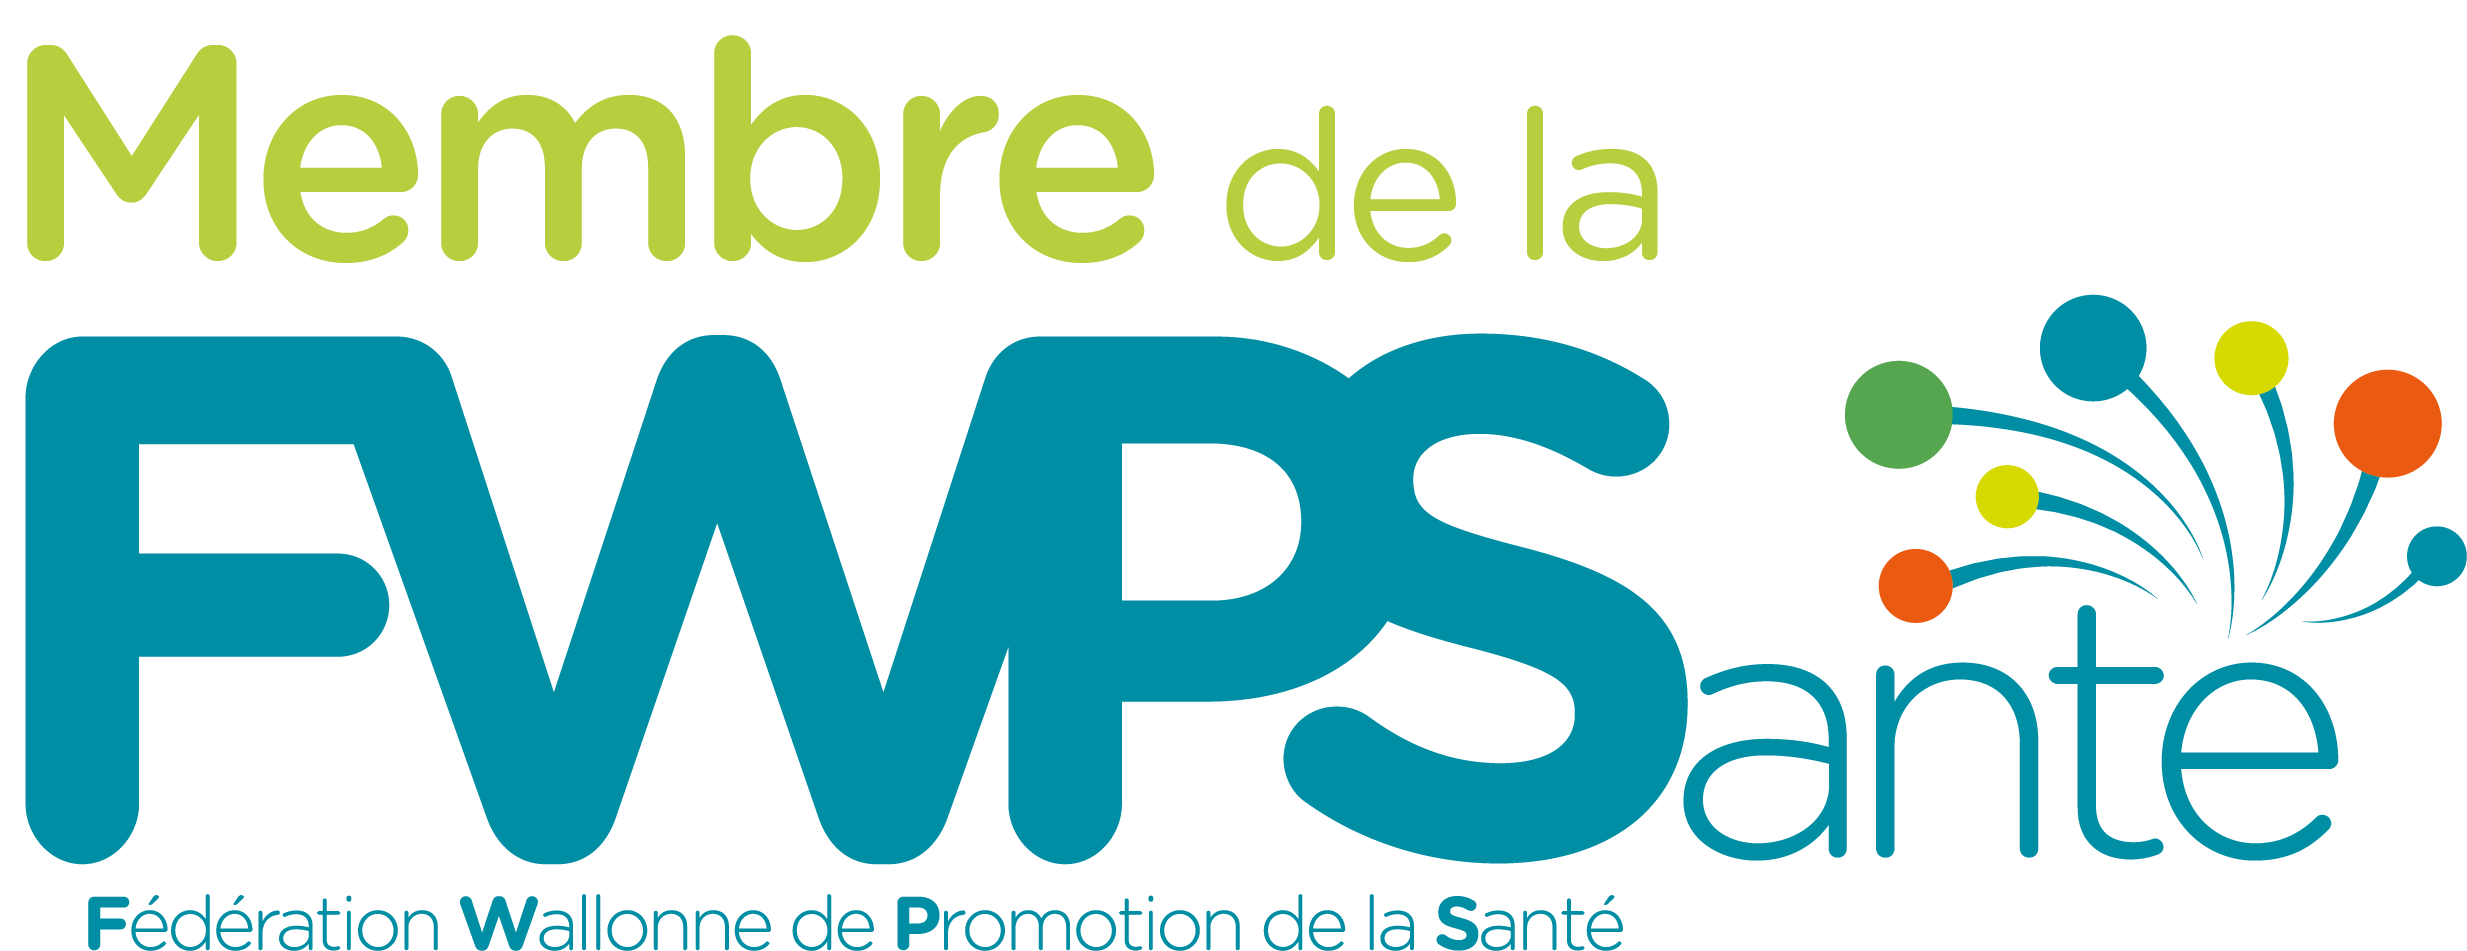 Logo Fédération Wallonne de promotion de la santé (FWPS)